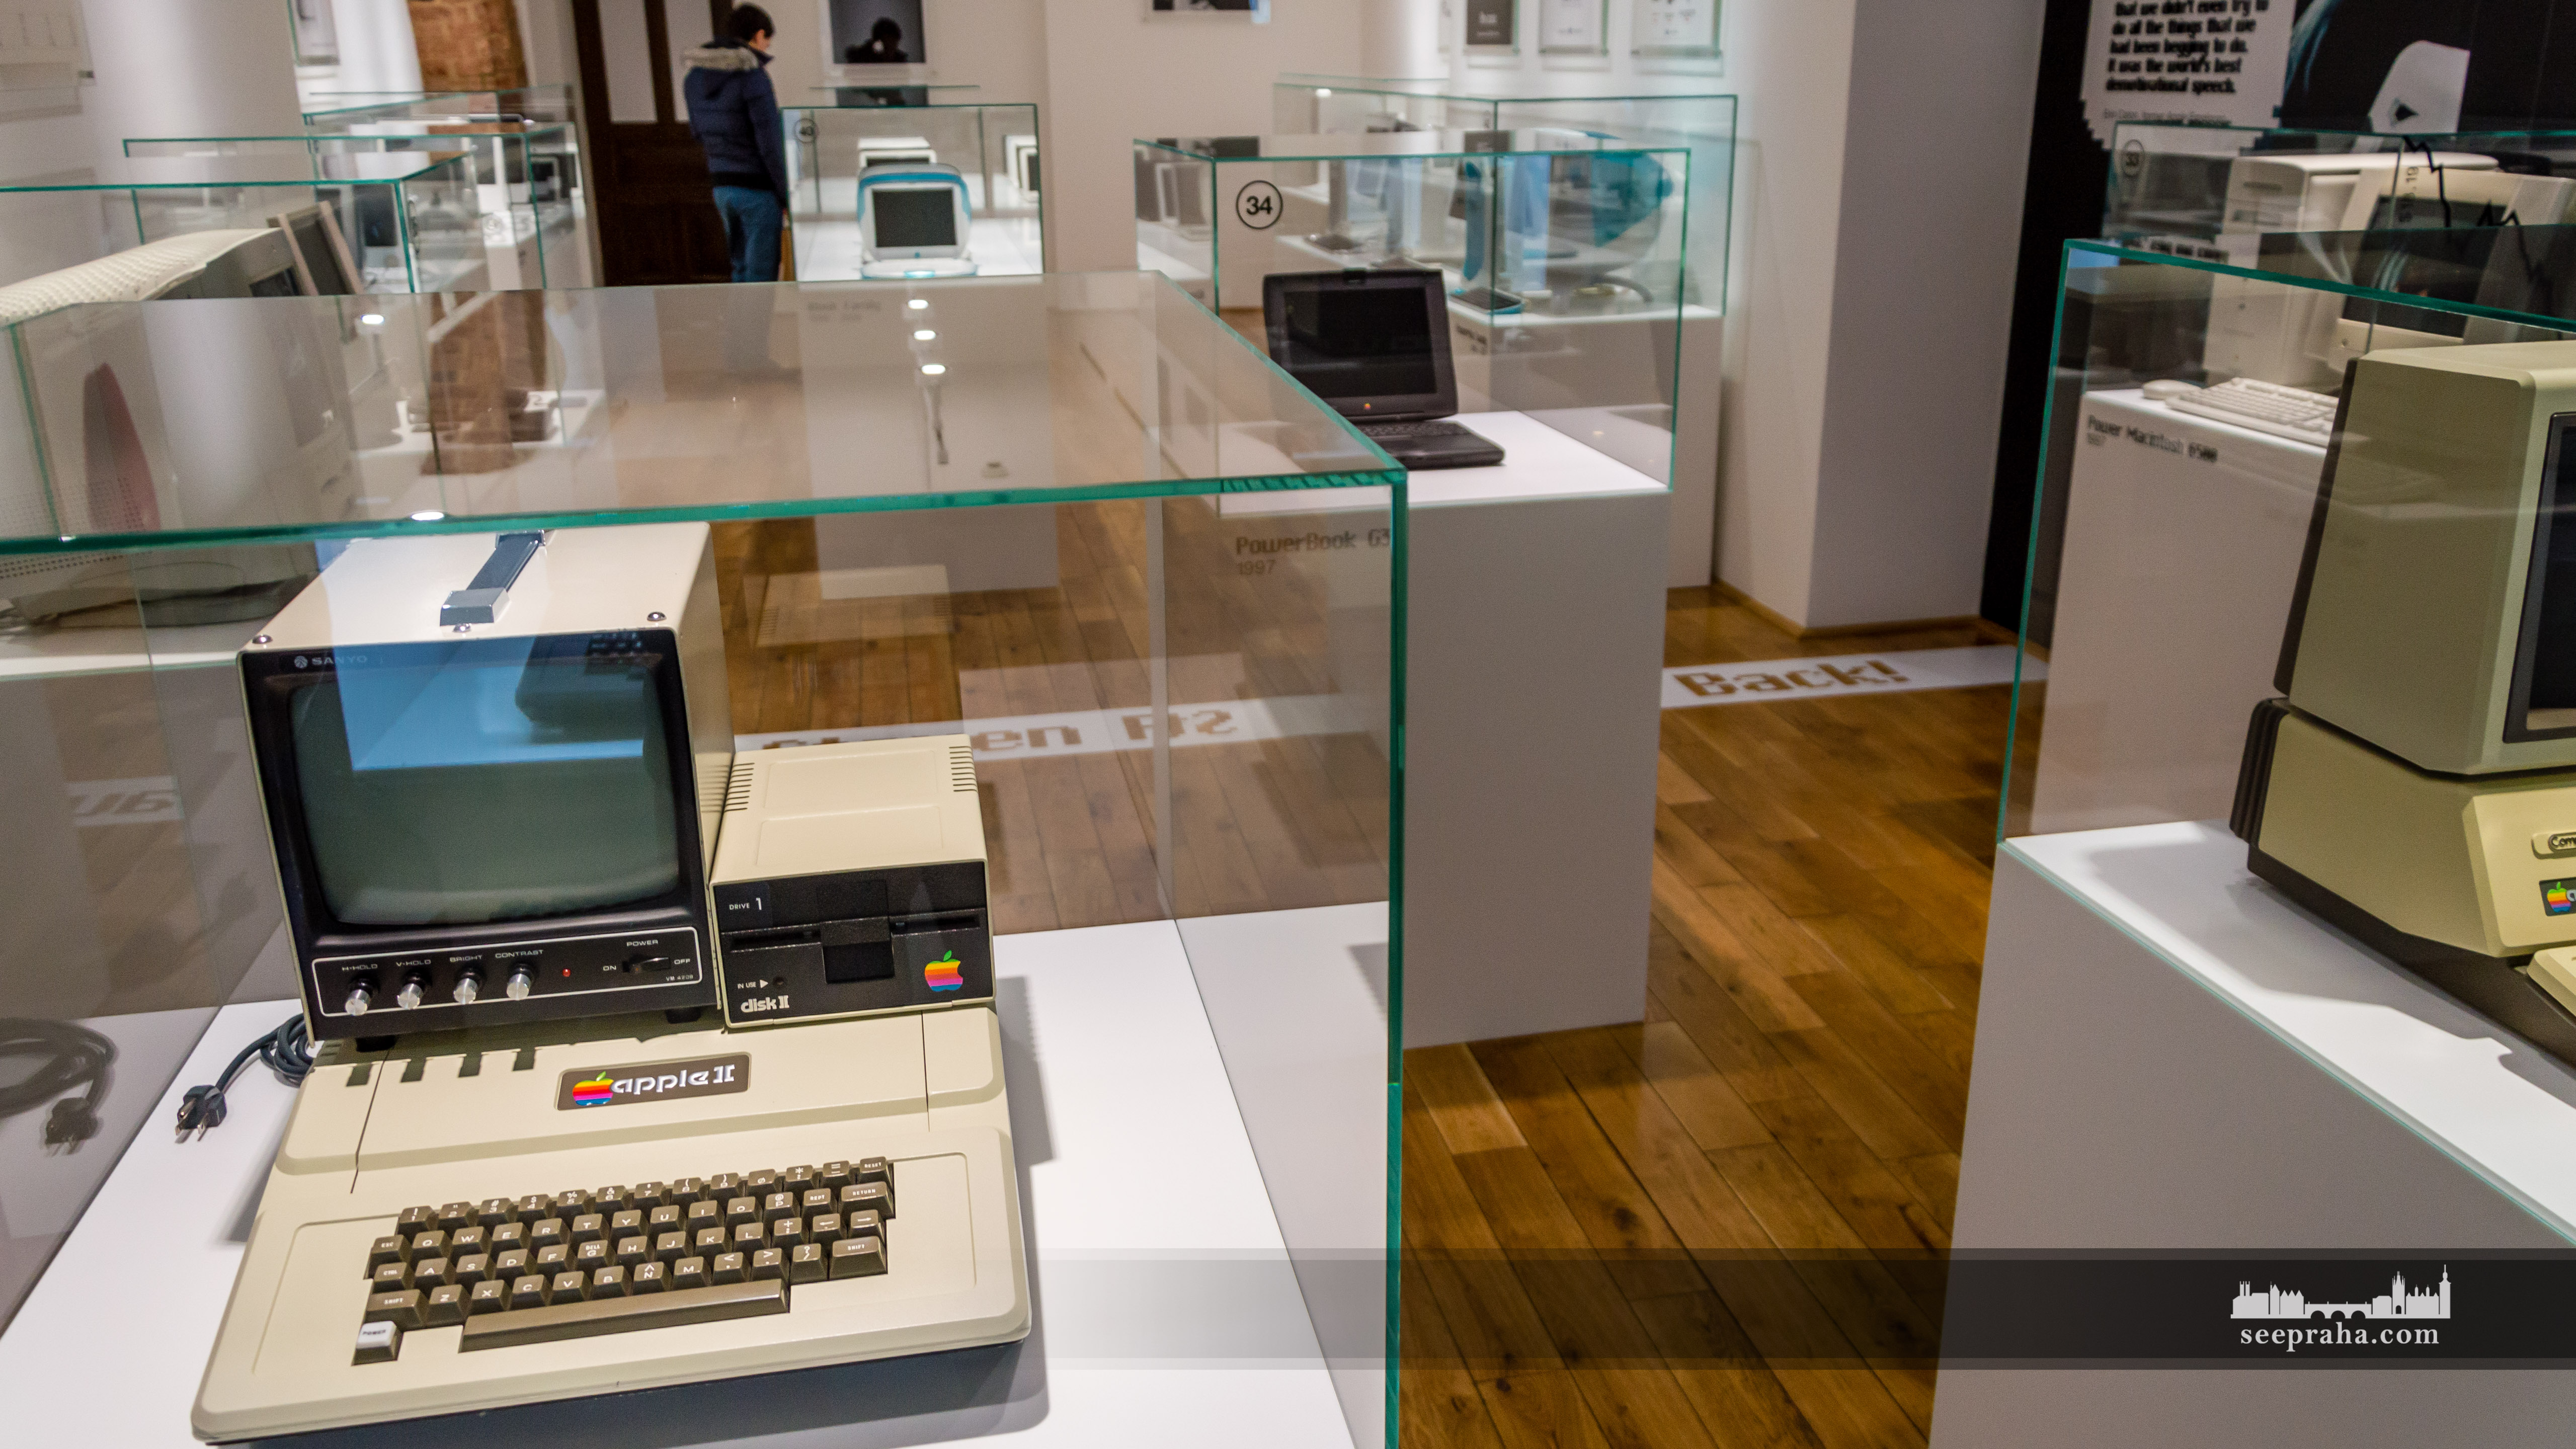 Komputery w Muzeum Apple'a, Praga, Czechy